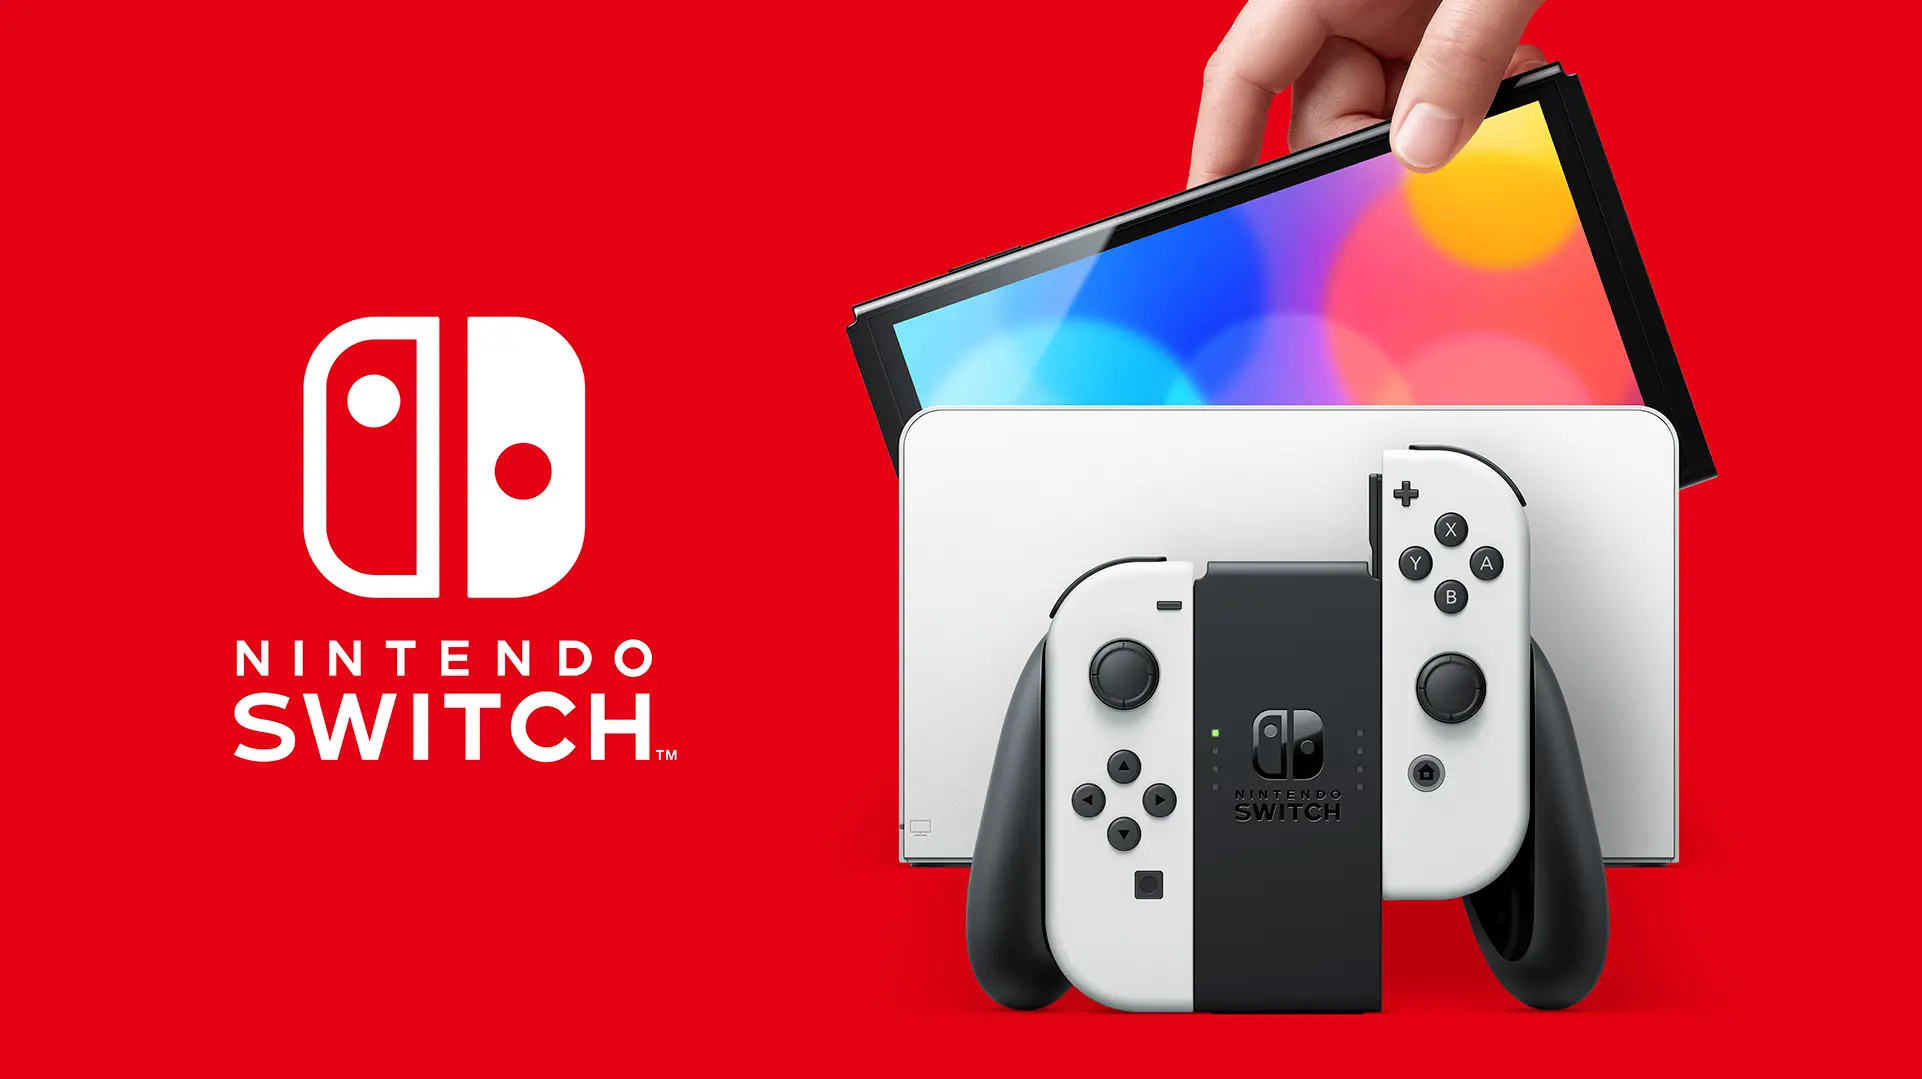 Nintendo Switch (OLED Model) chính thức ra mắt, giá $350, ngày 8/10 bán, chưa phải Pro